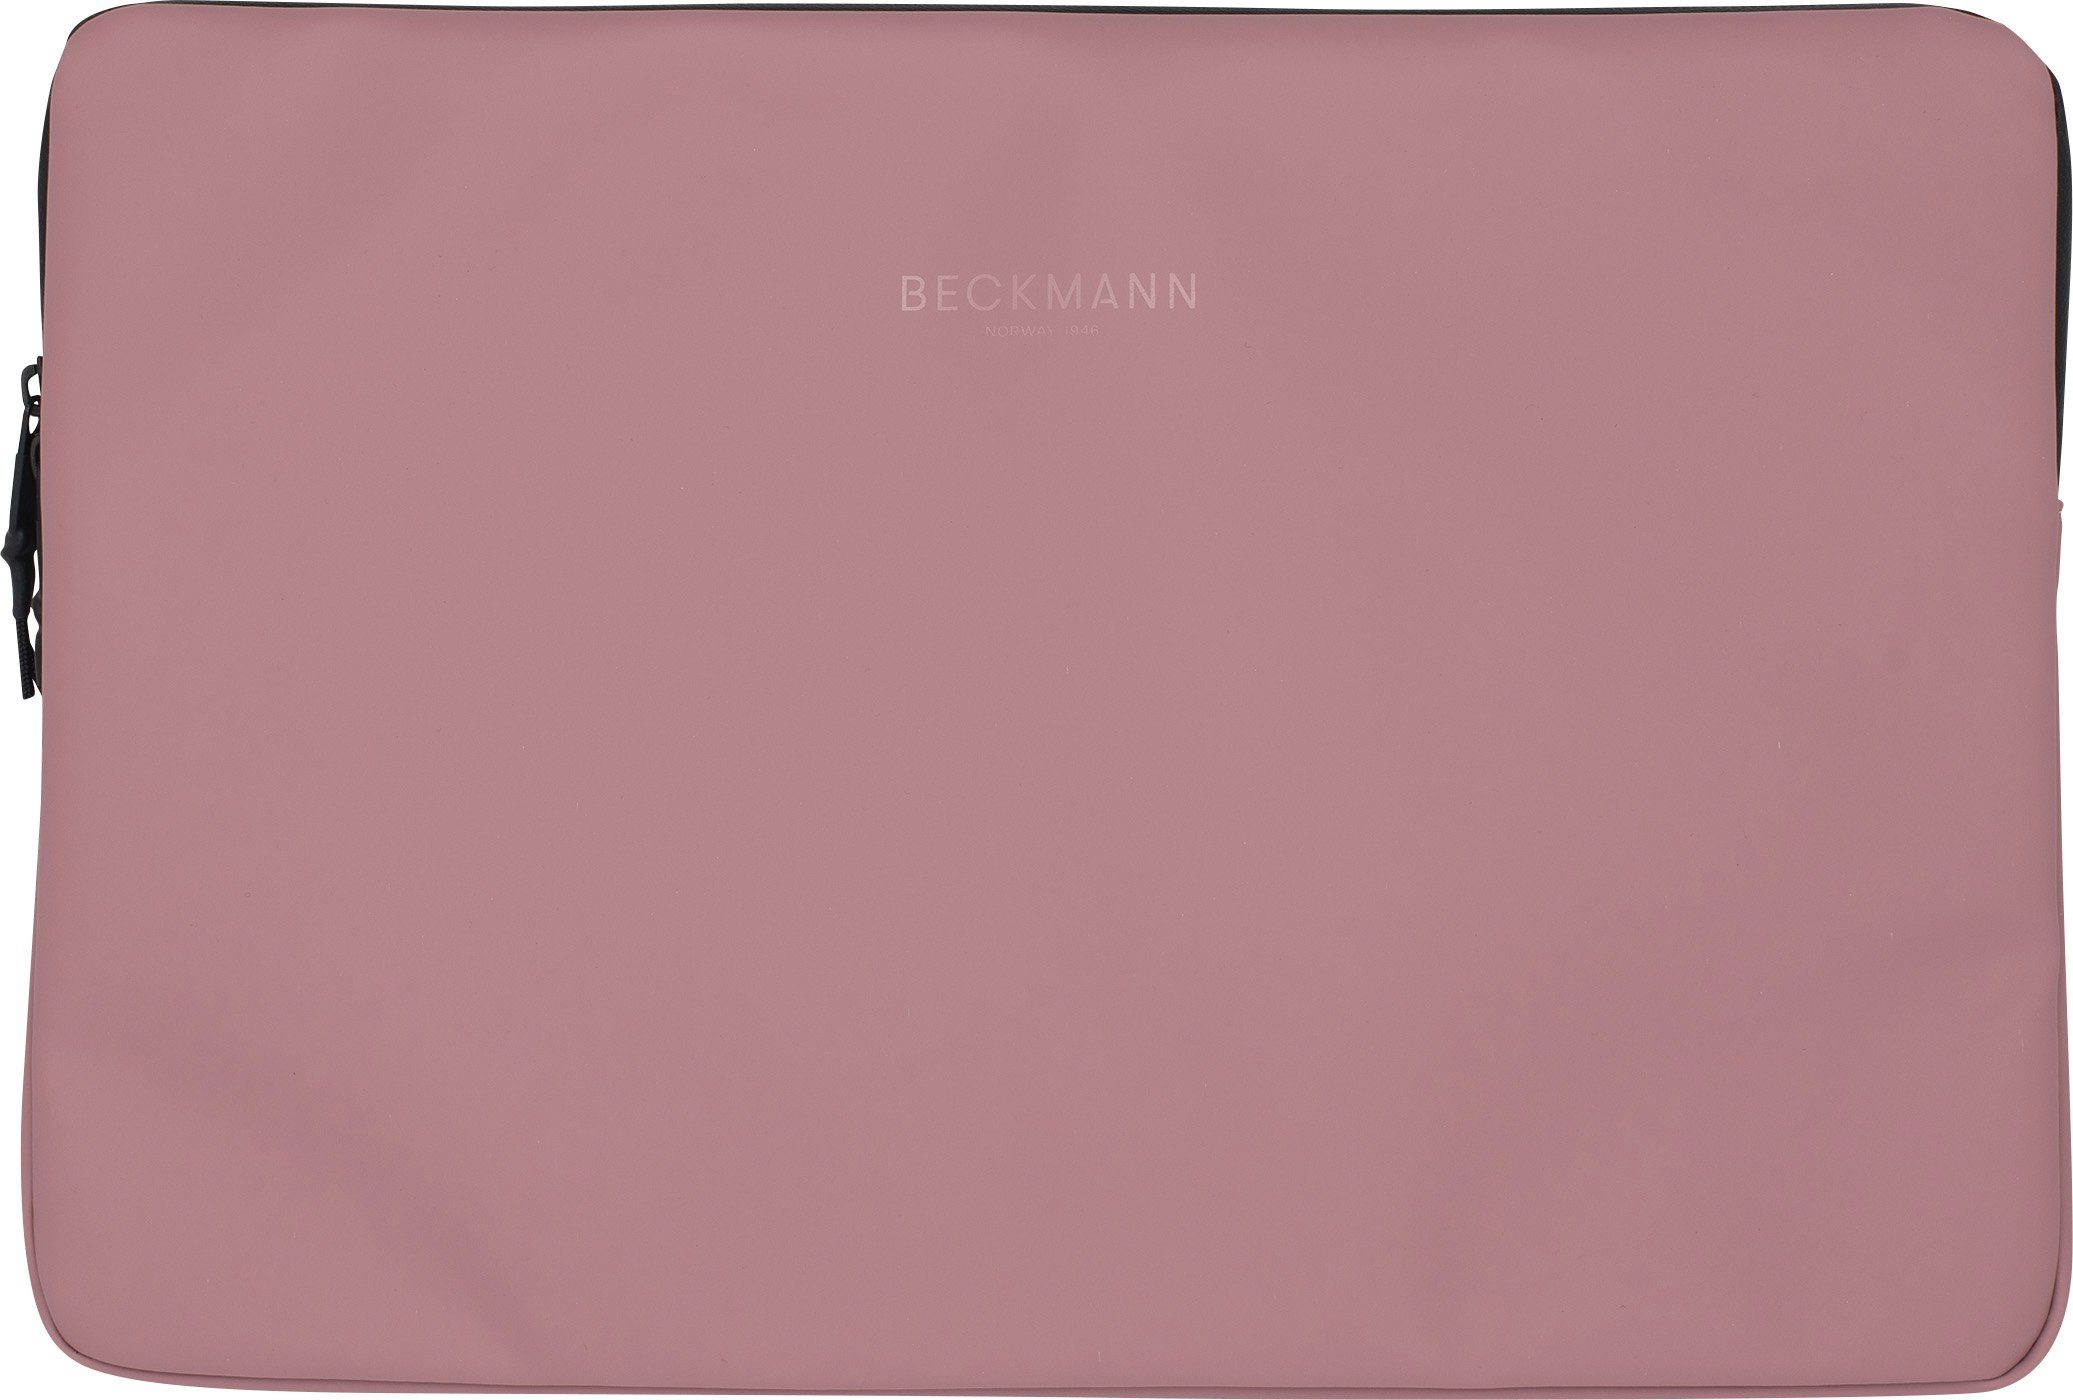 Beckmann Laptoptasche Laptophülle Street Sleeve L Ash Rose 15 Zoll (1 Stück), Laptoptasche, Tablet-Hülle